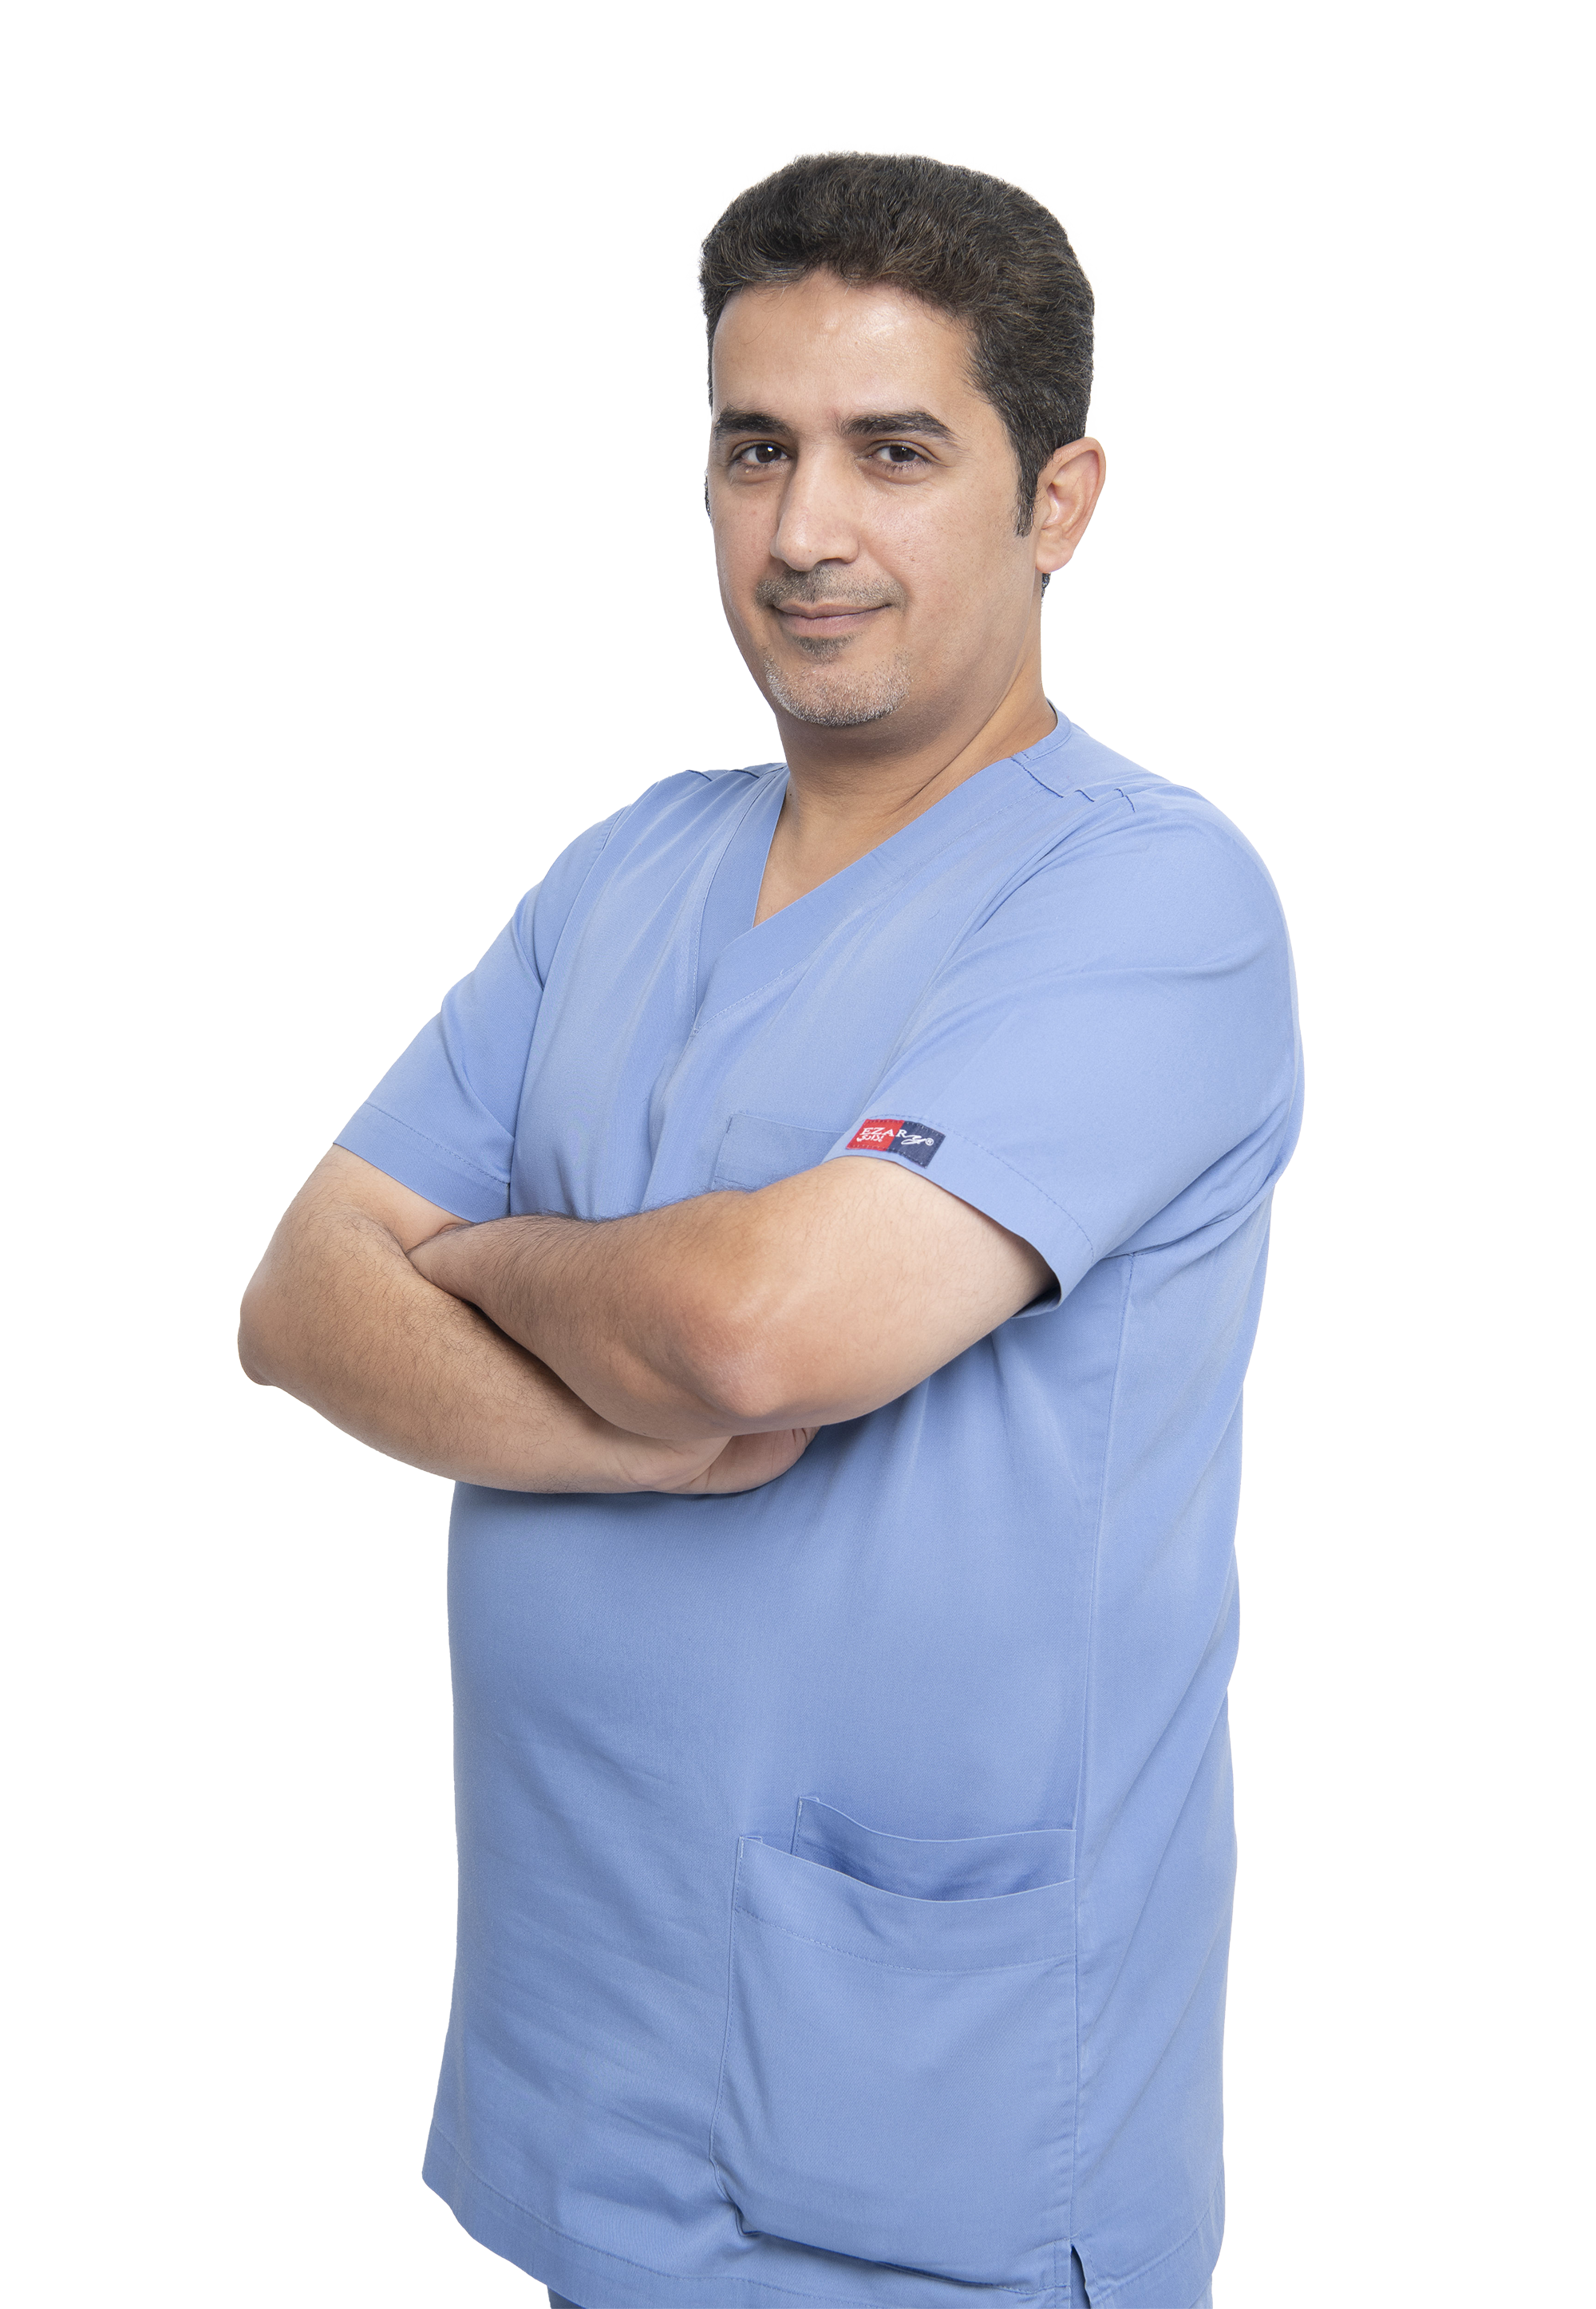 Dr. Ali Al Emad